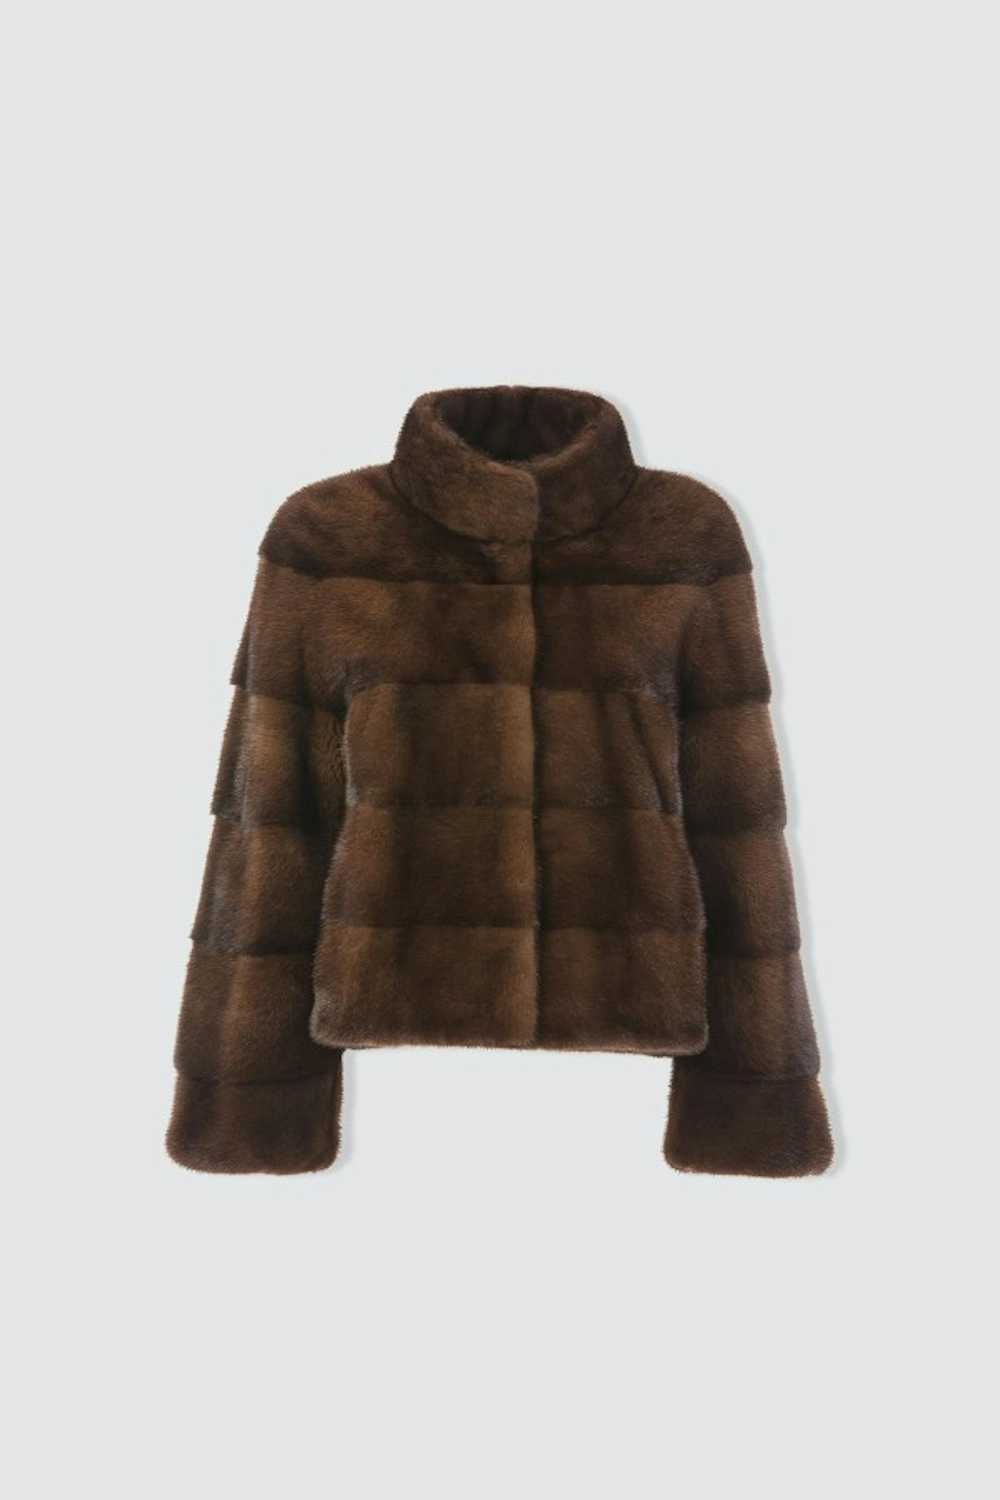 Mink Fur Coat WOMEN'S SHORT BROWN MINK COAT - image 4